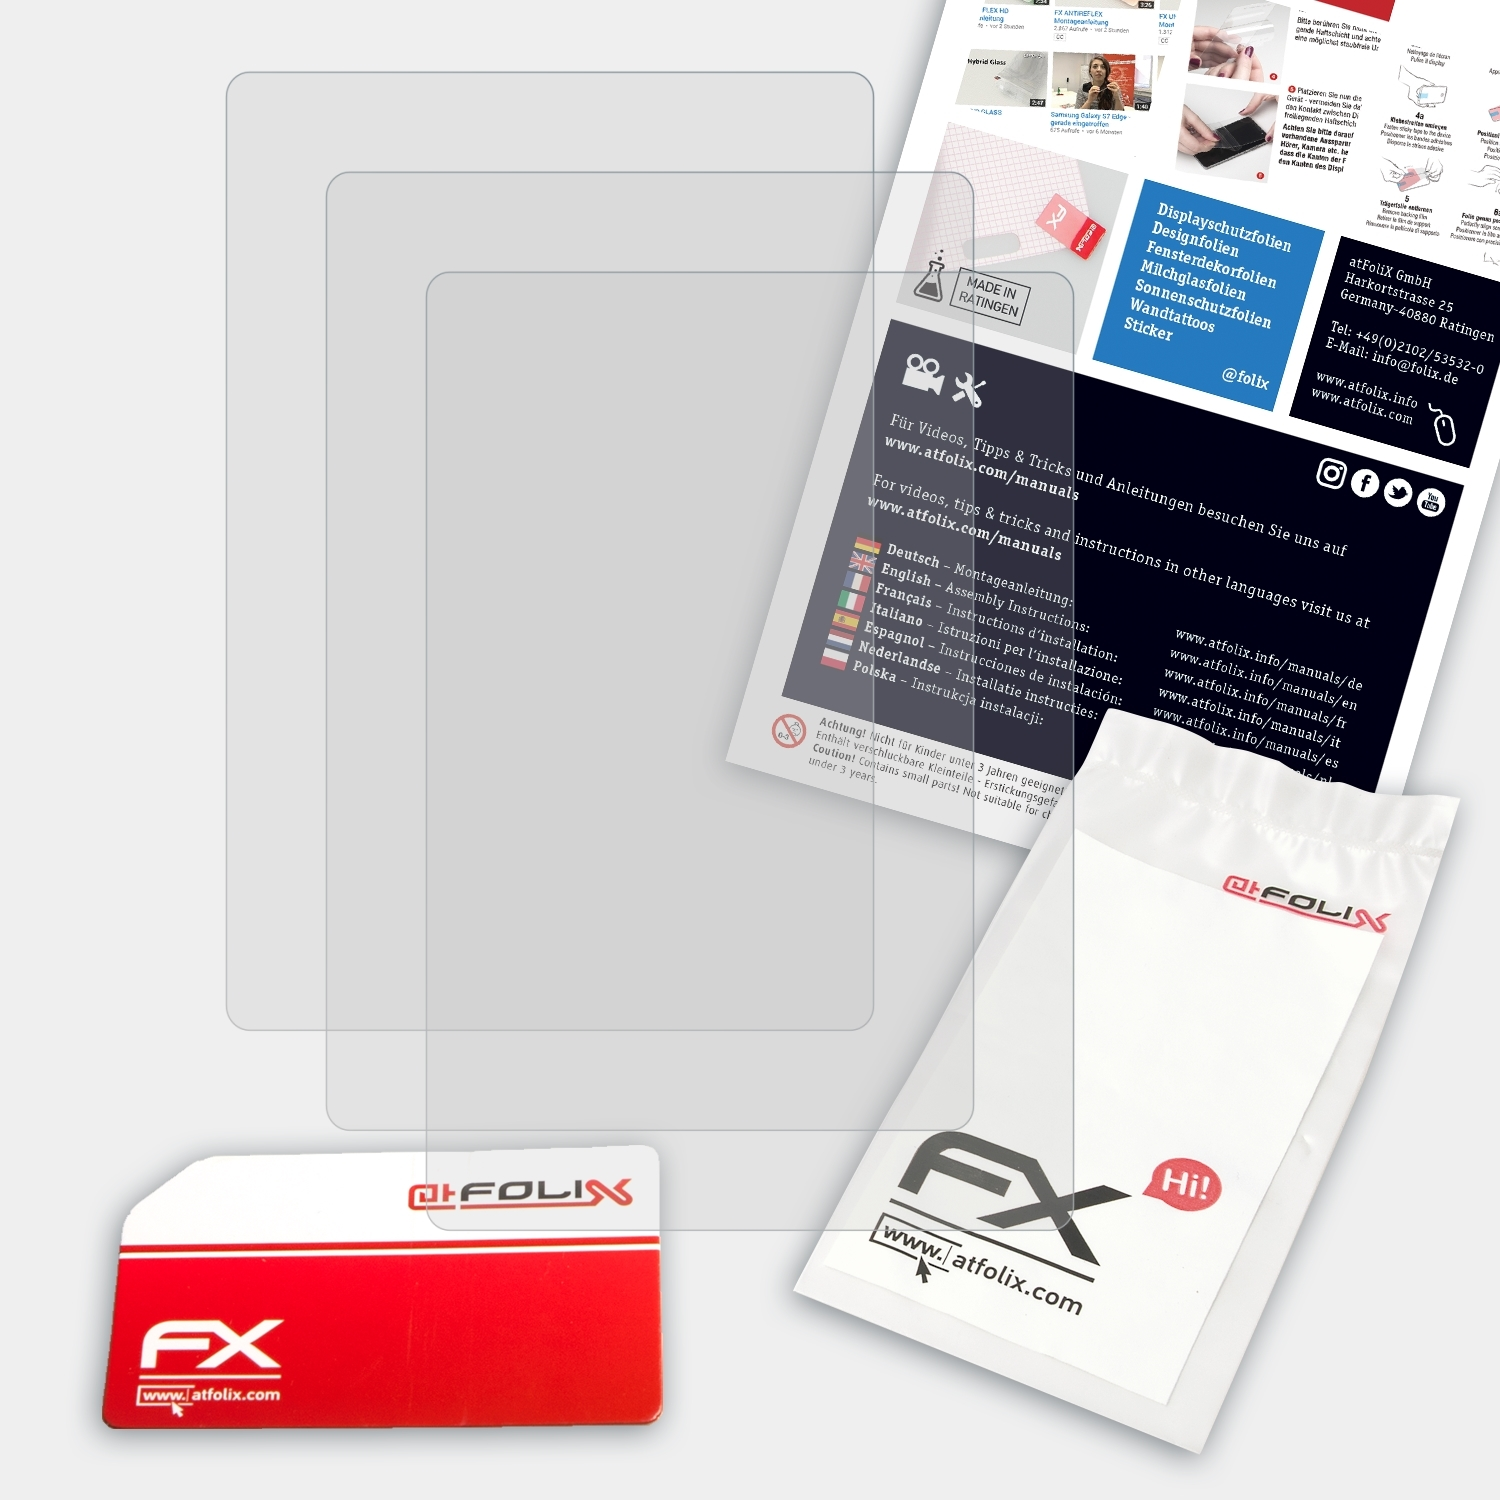 Kiox) FX-Antireflex Bosch 3x Displayschutz(für ATFOLIX